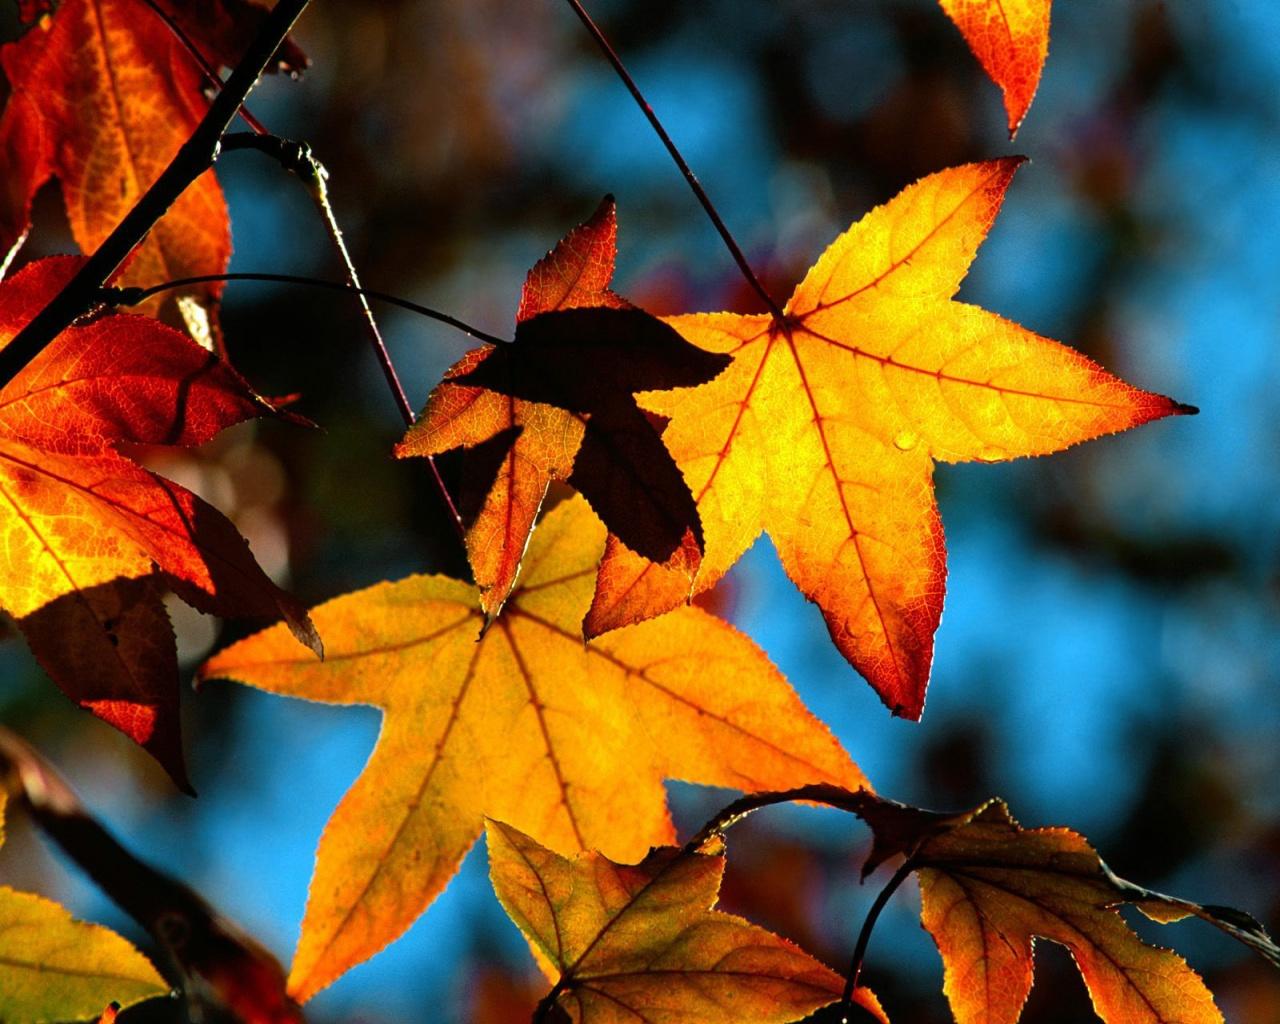 Autumn leaves light wallpaper. Autumn leaves light stock